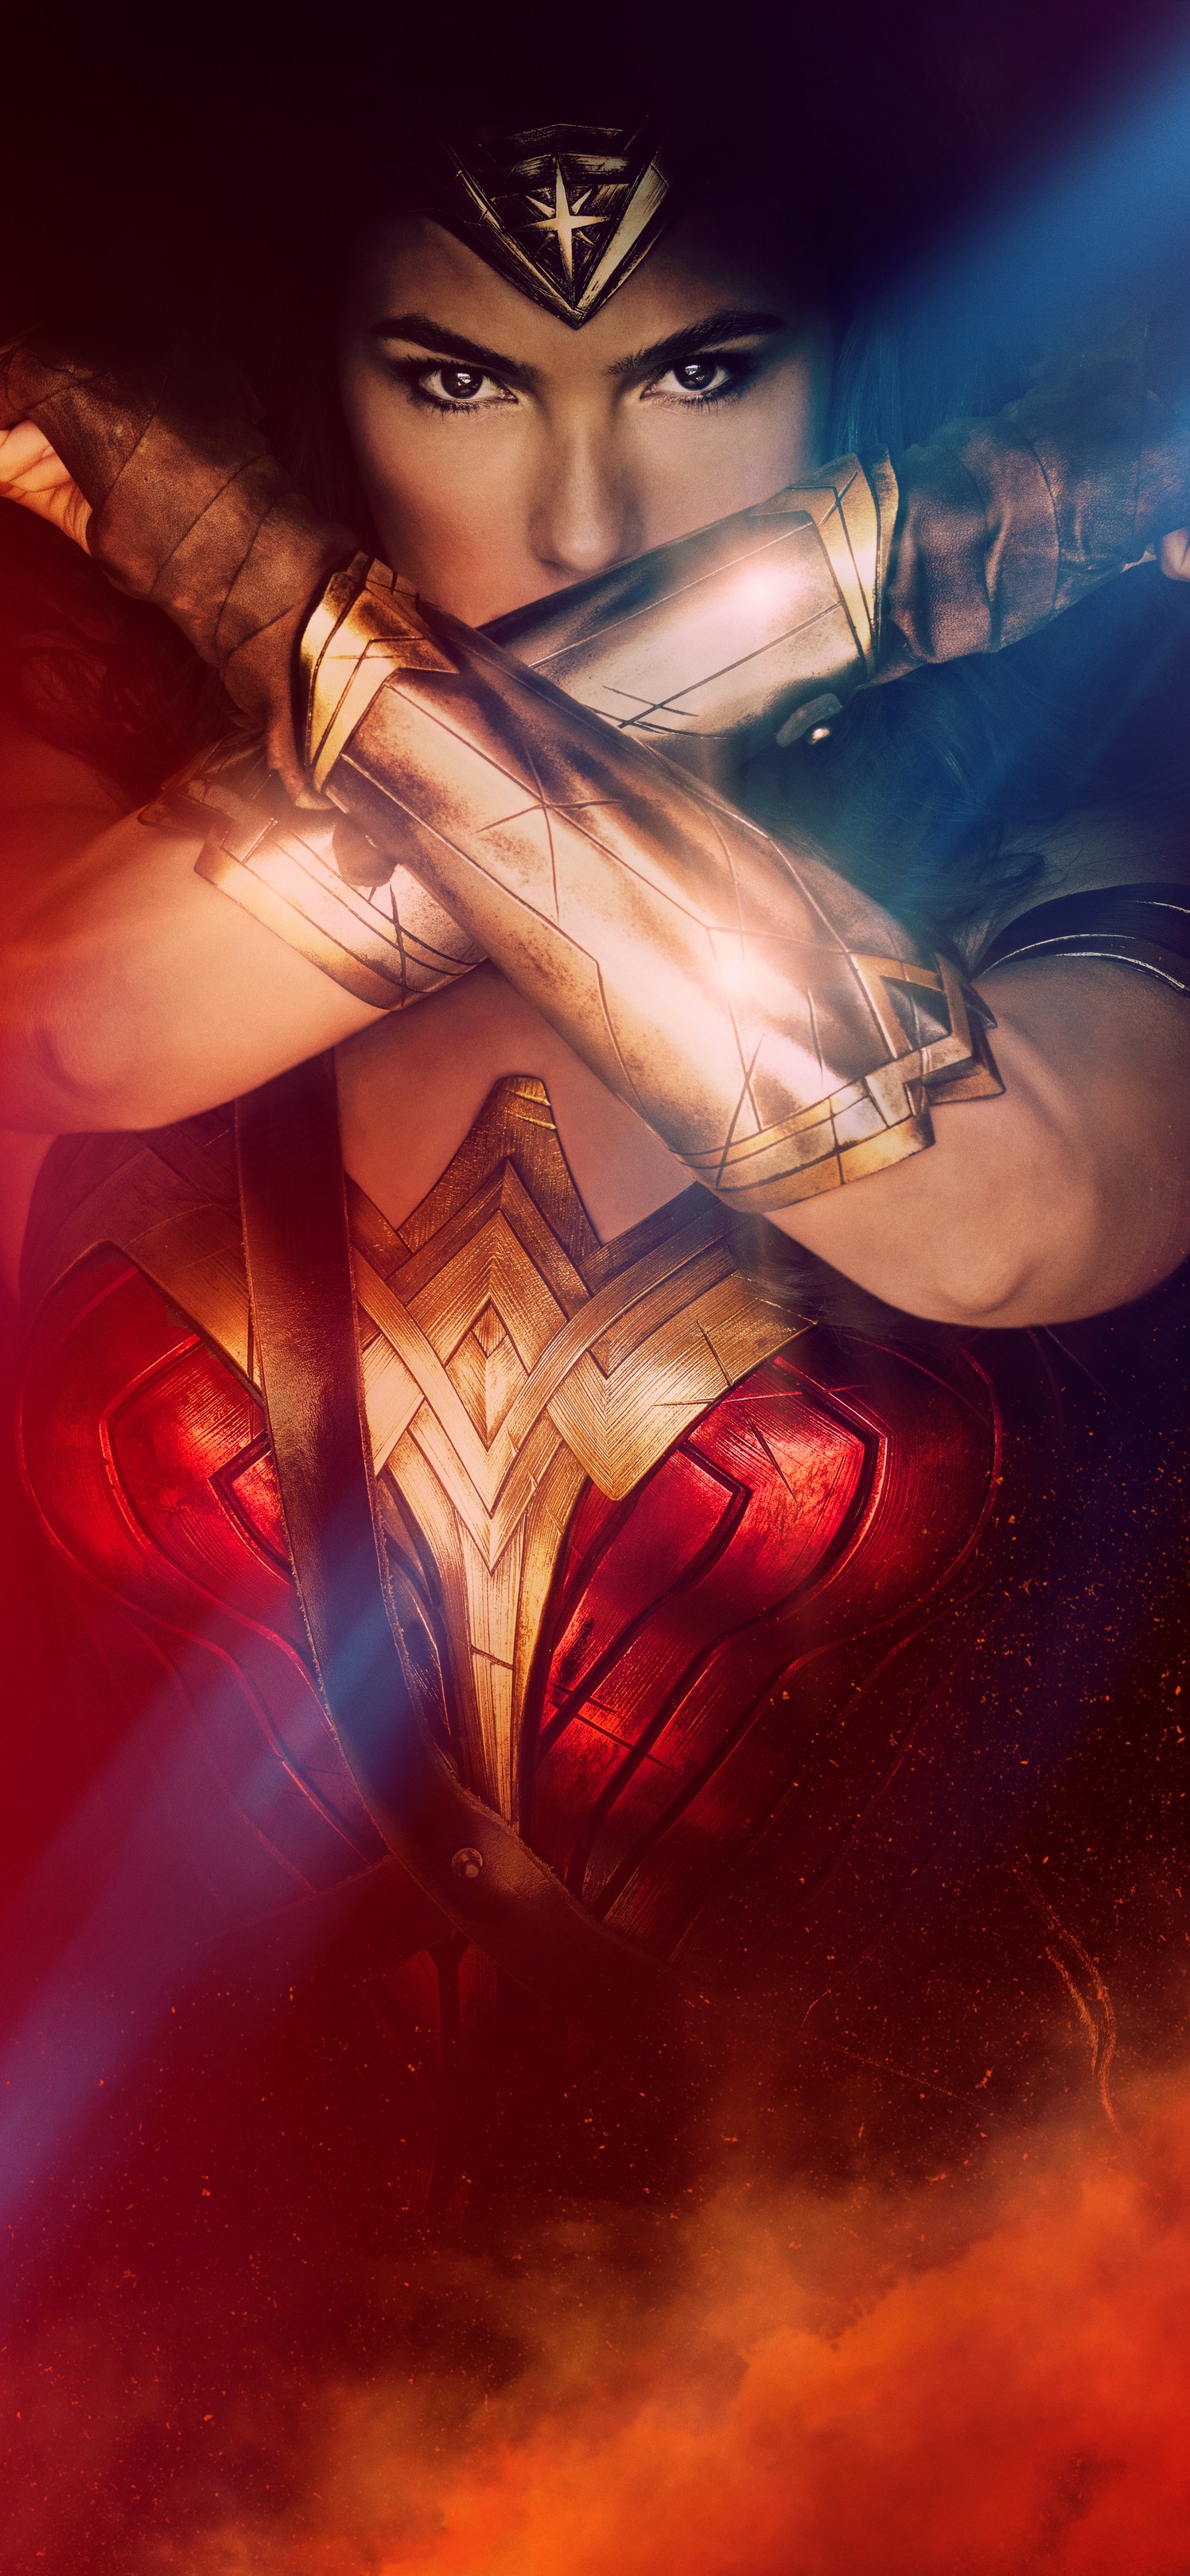 超帅DC女性英雄“神奇女侠”2K手机壁纸